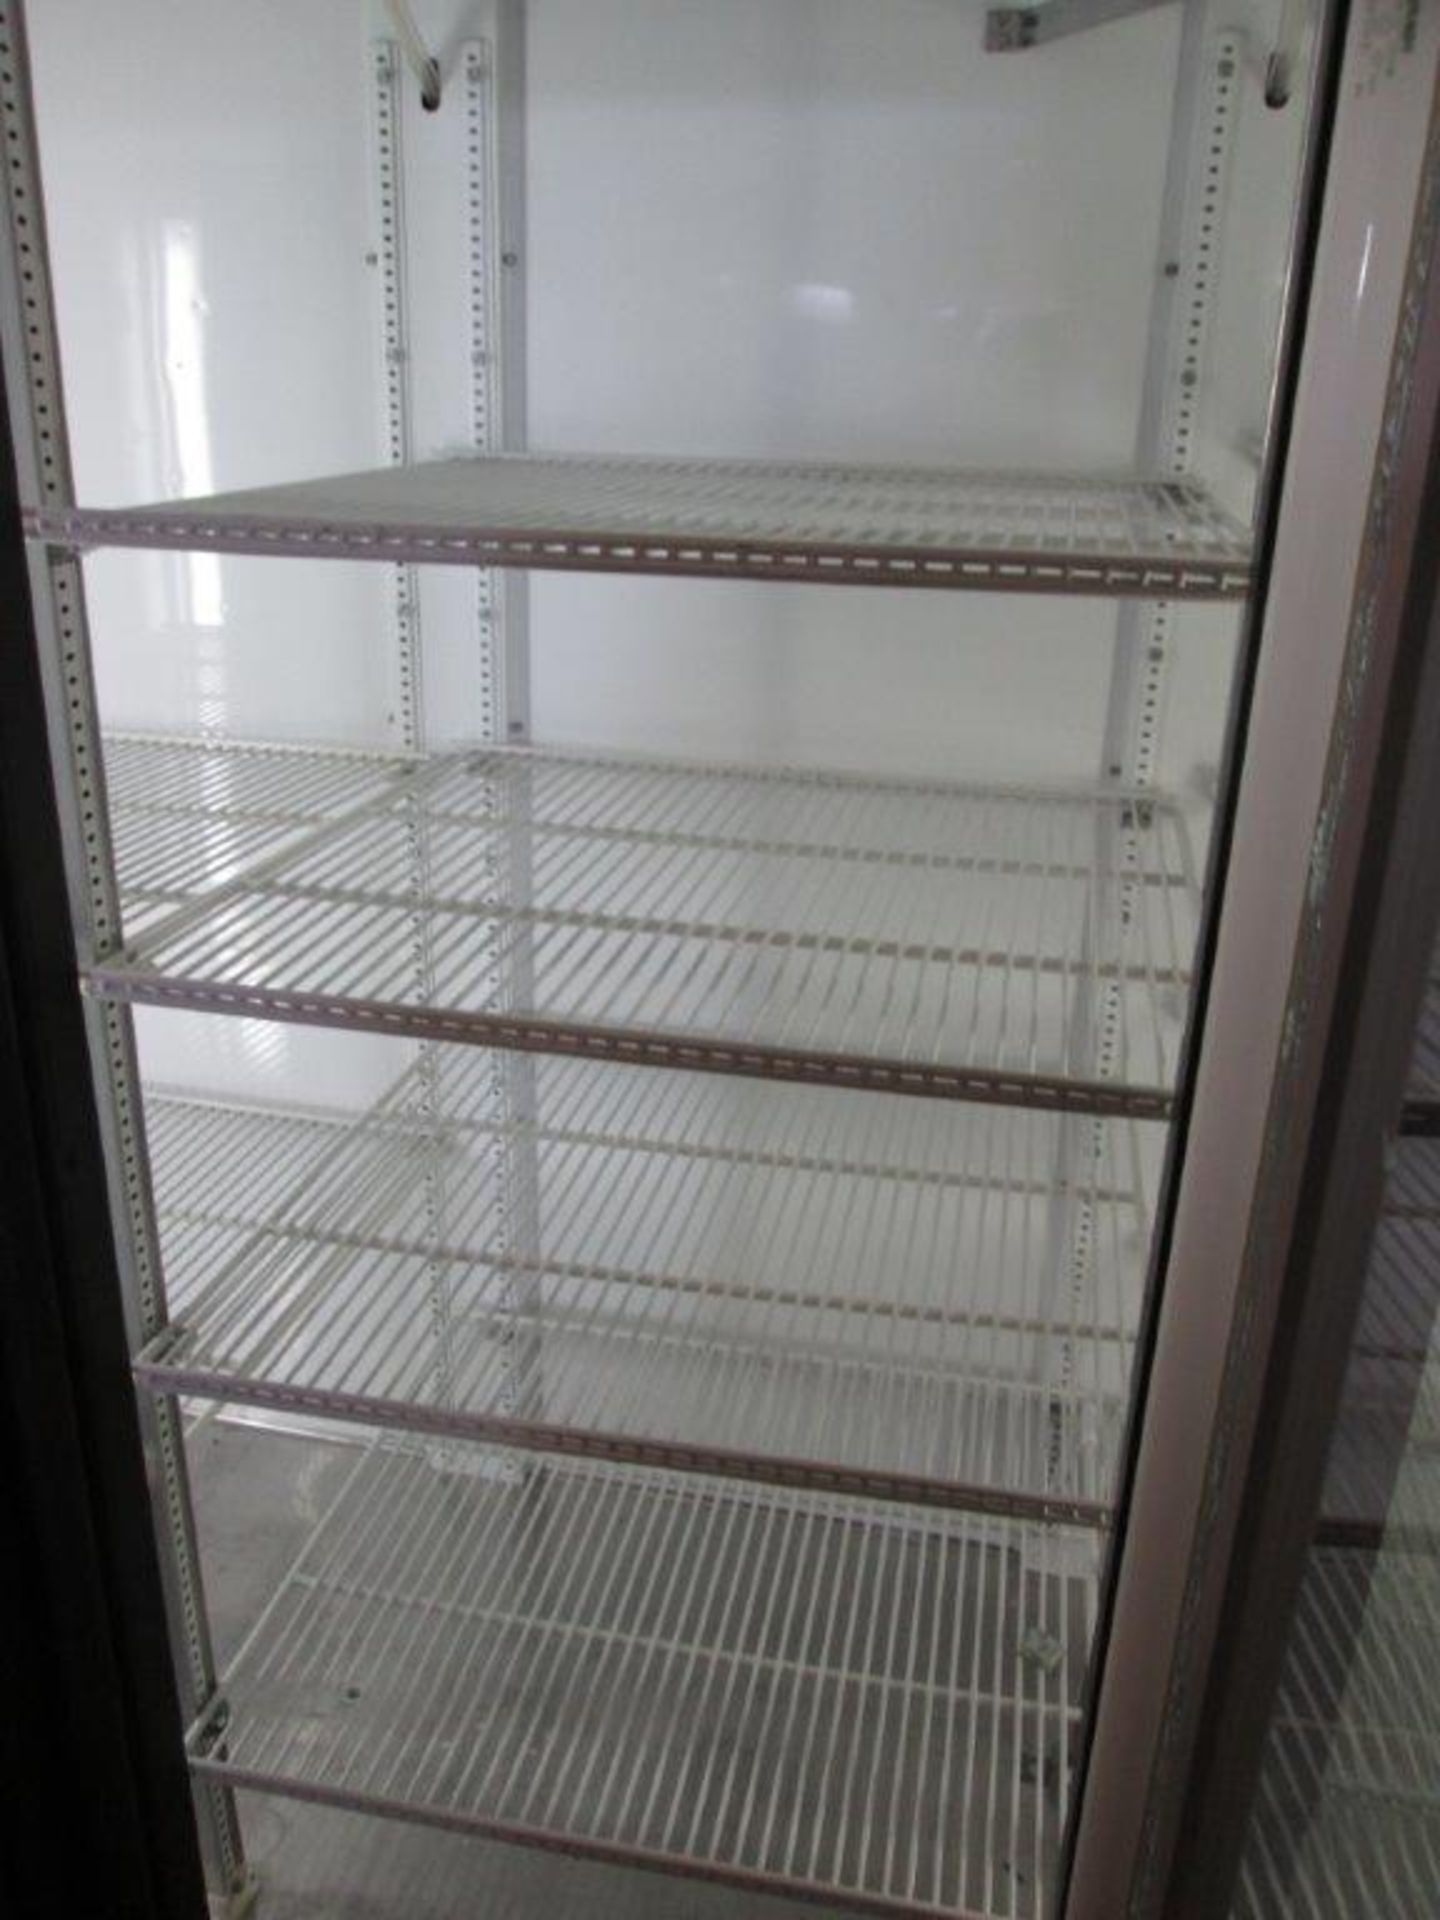 VWR GDM-72 Chromatogrophy Refrigerator - Image 3 of 3